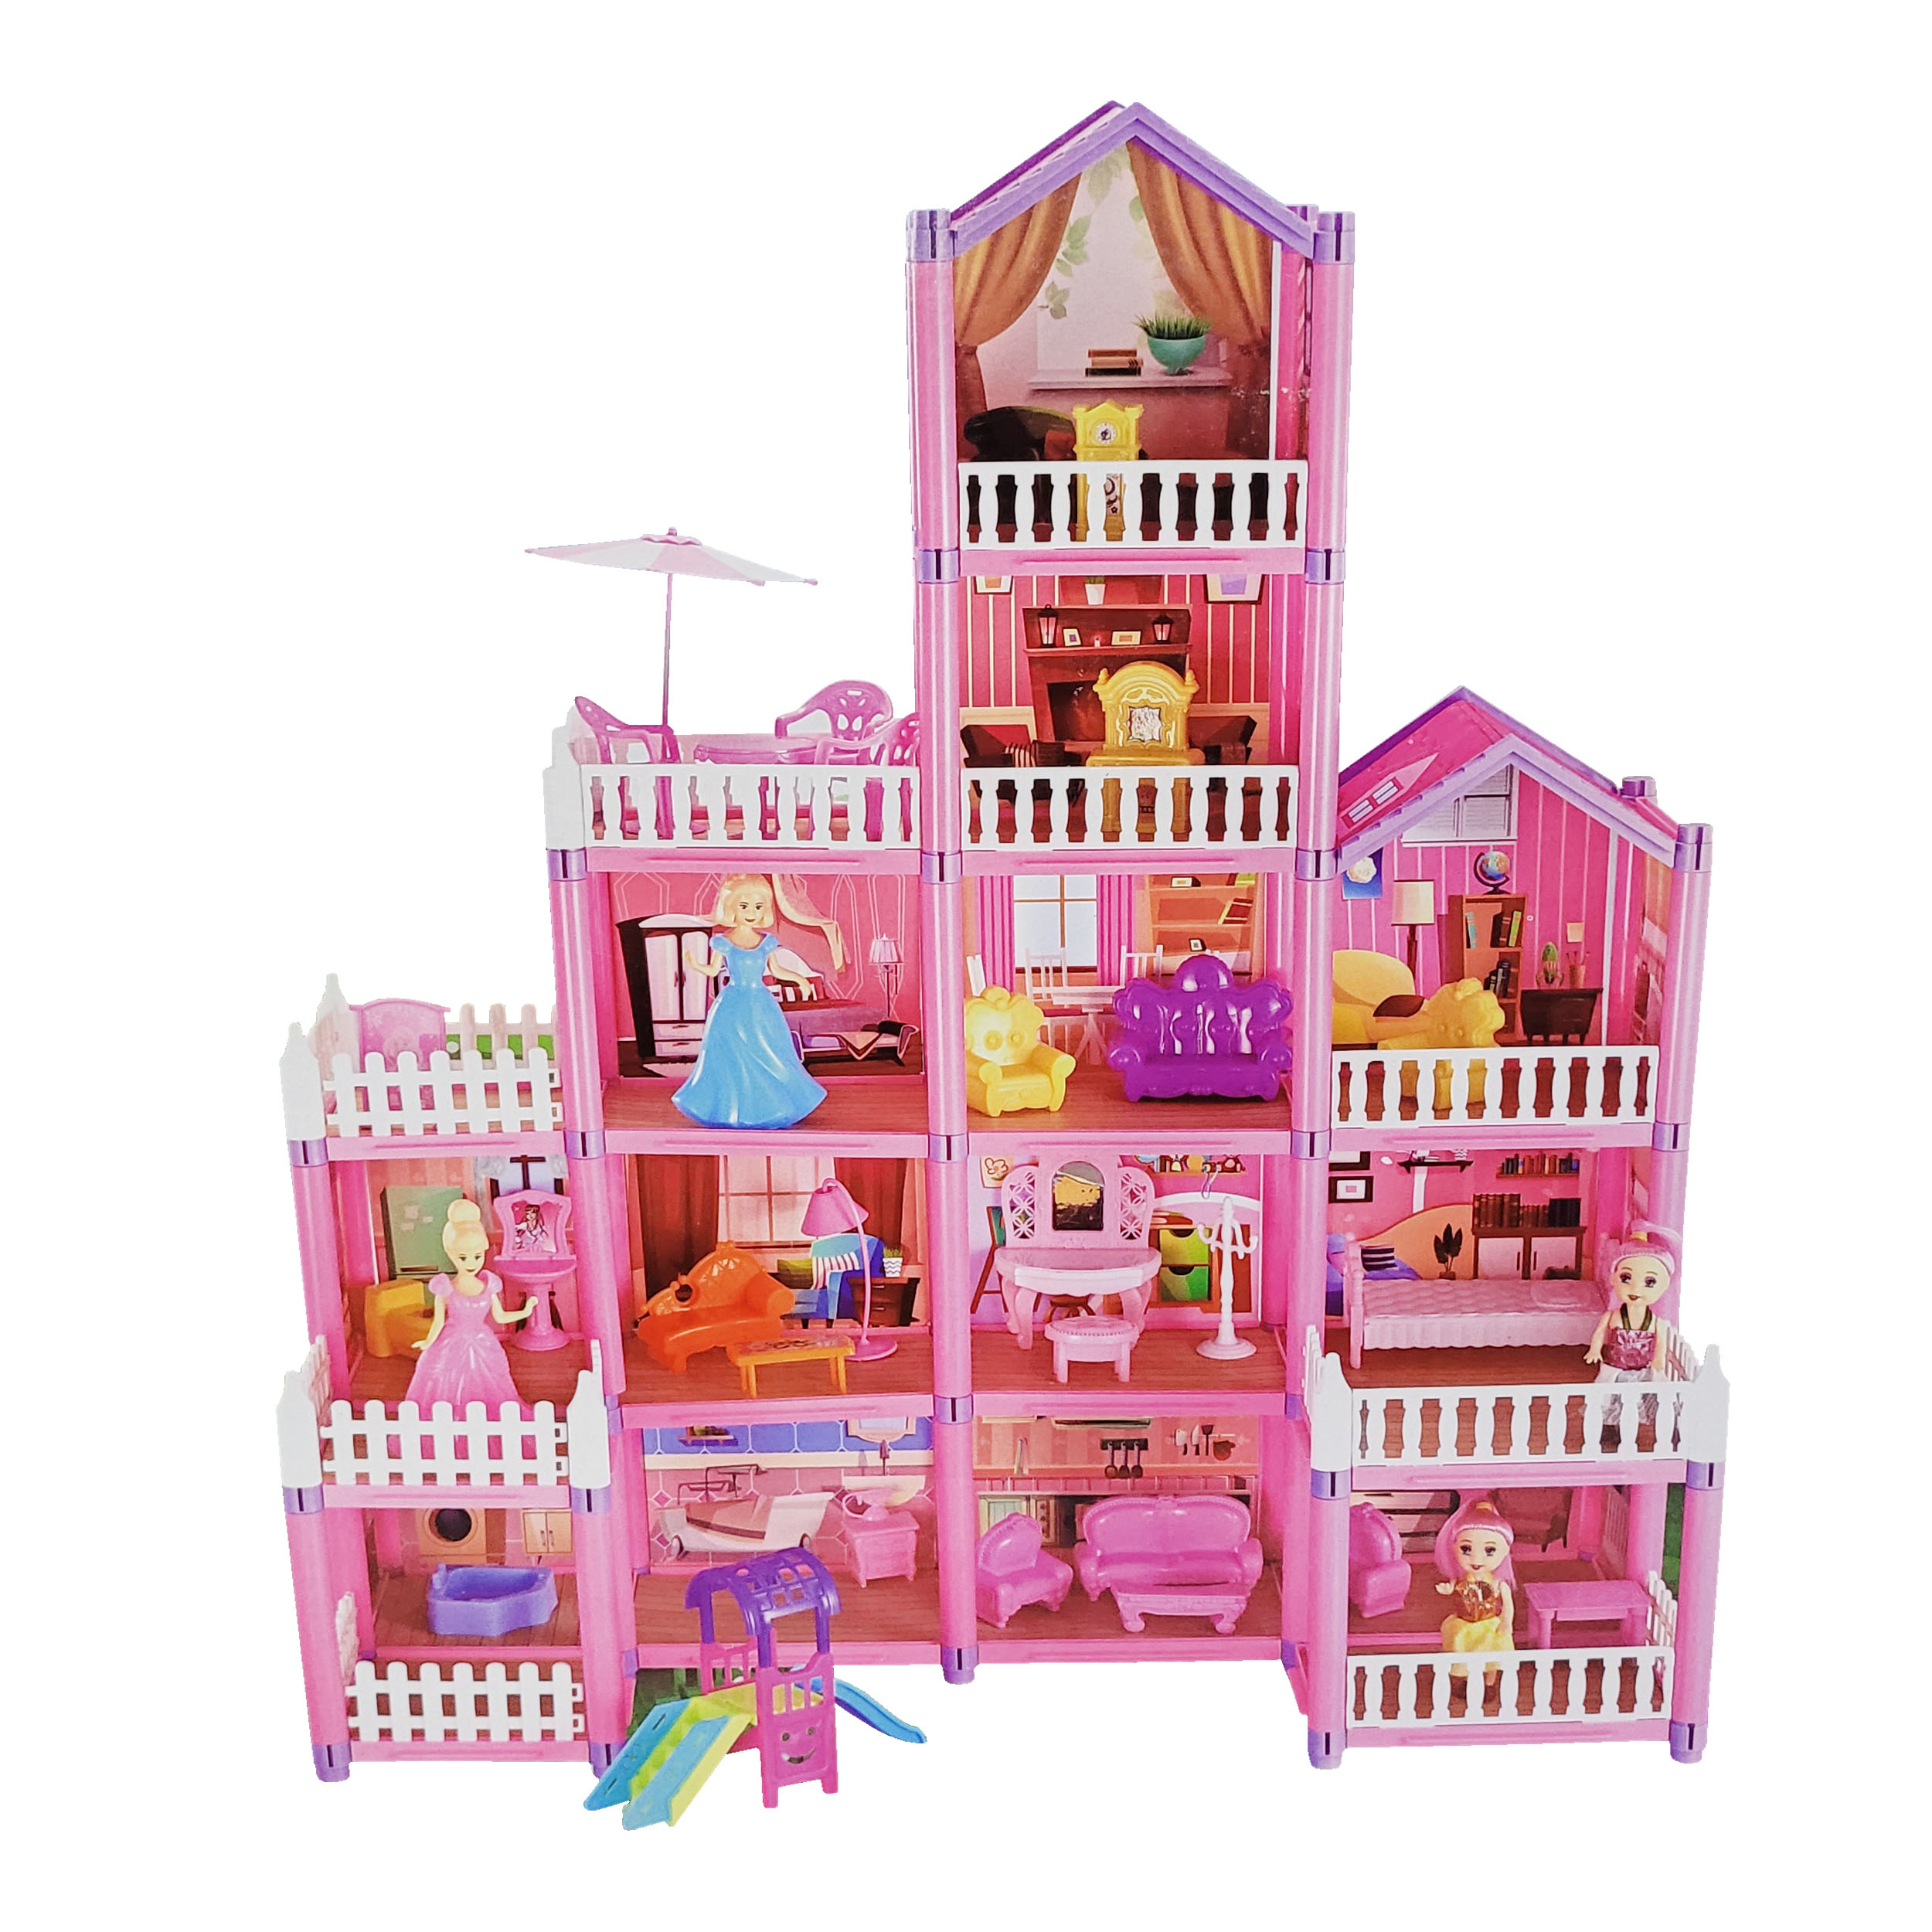 اسباب بازی طرح خانه عروسکی مدل Dream castle کد 55